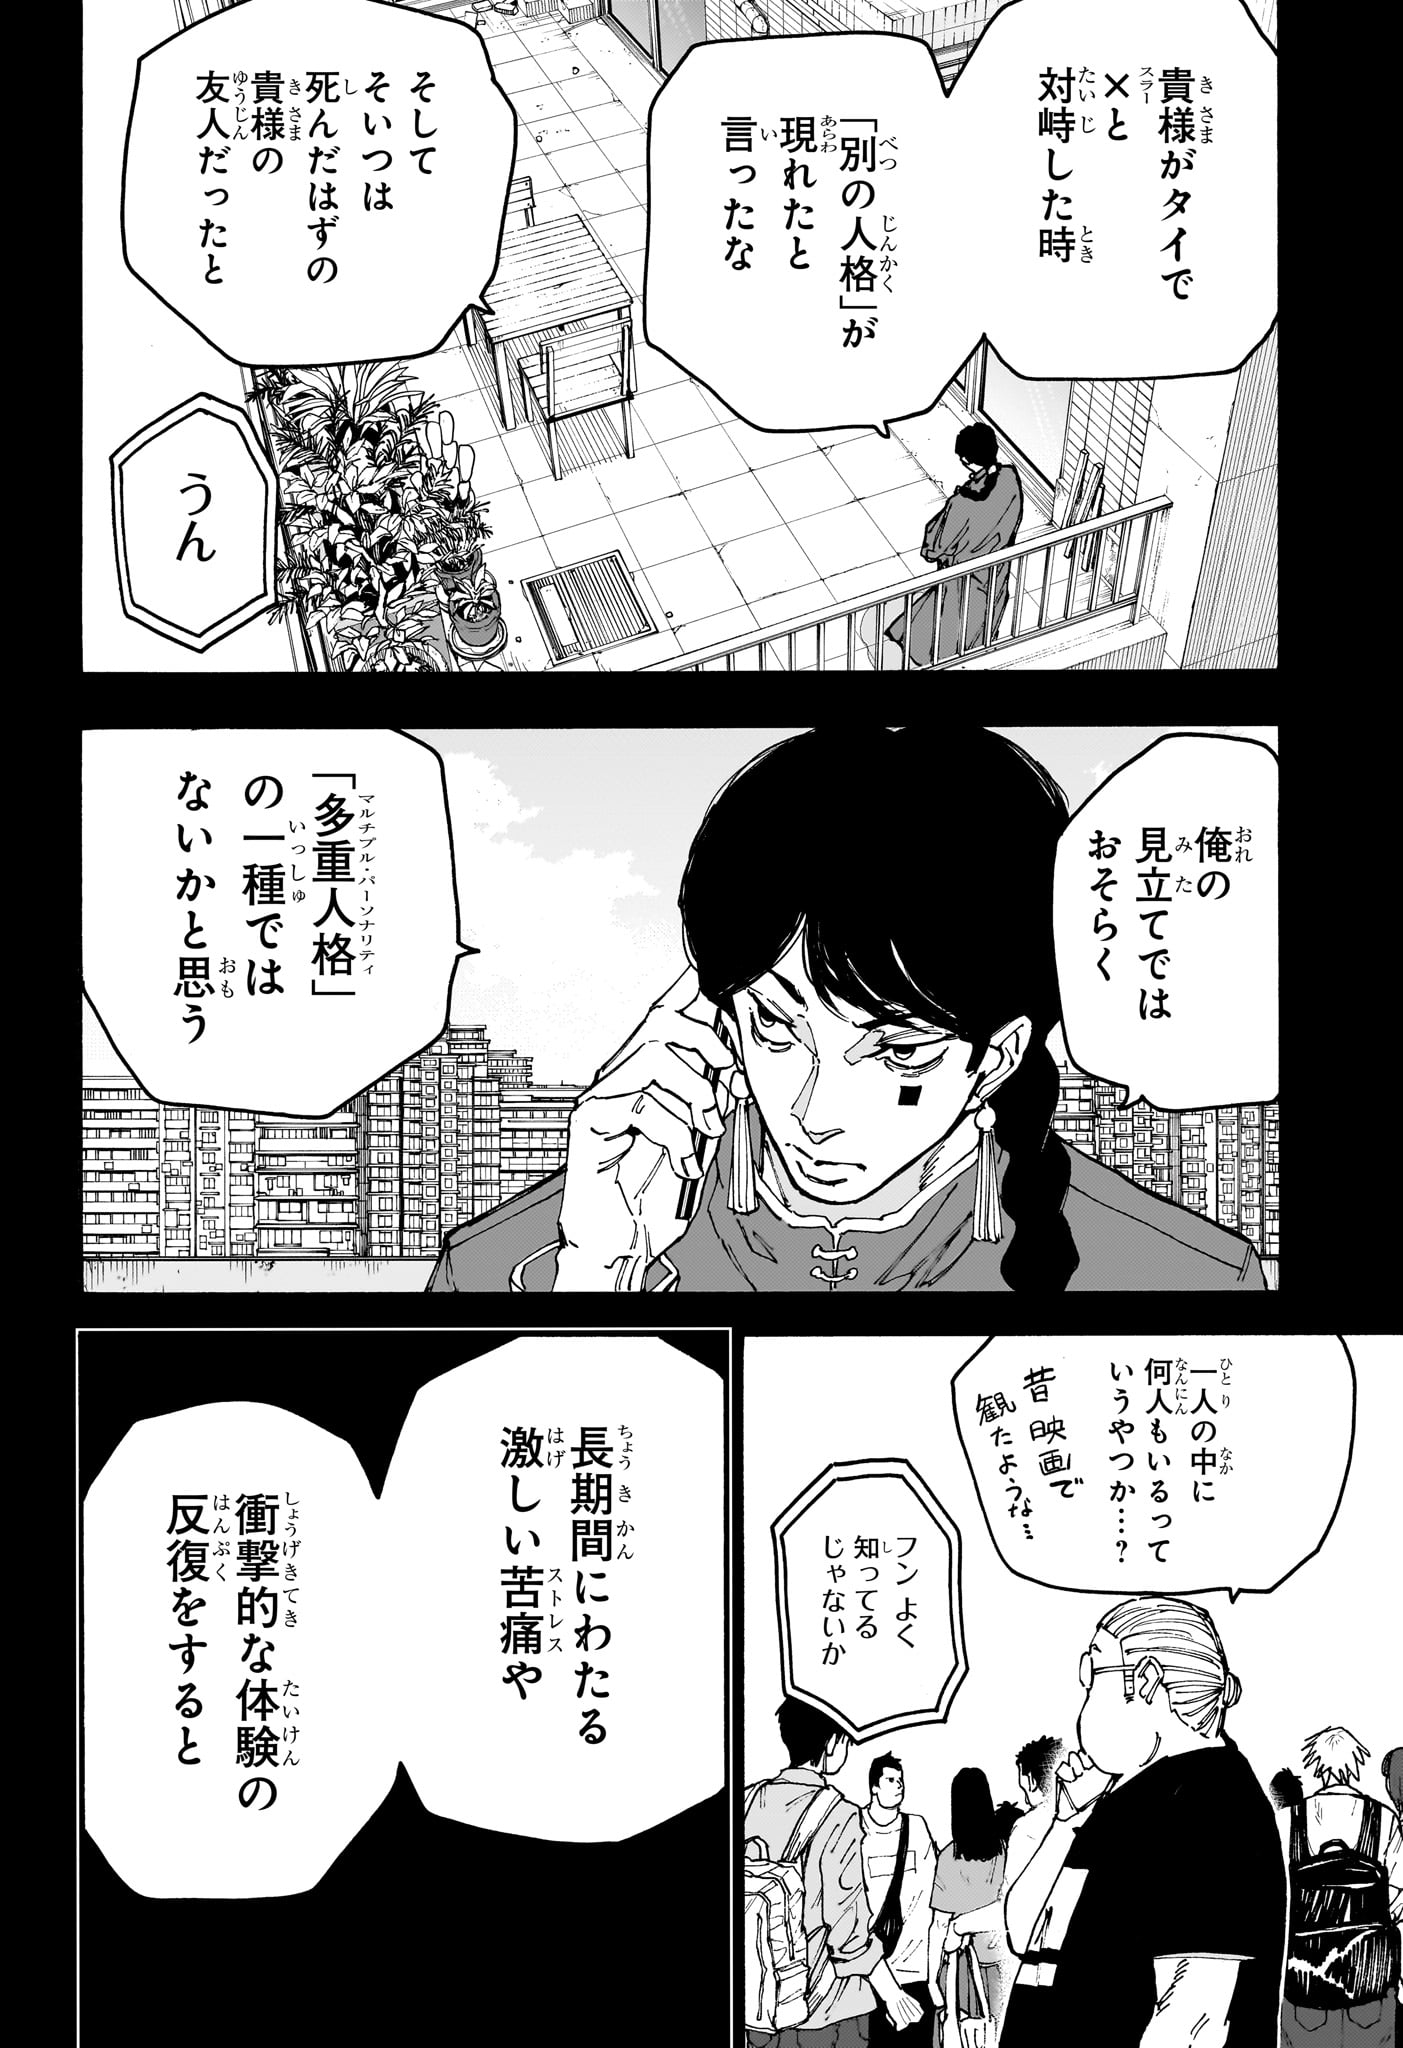 Sakamoto Days - Chapter 162 - Page 2